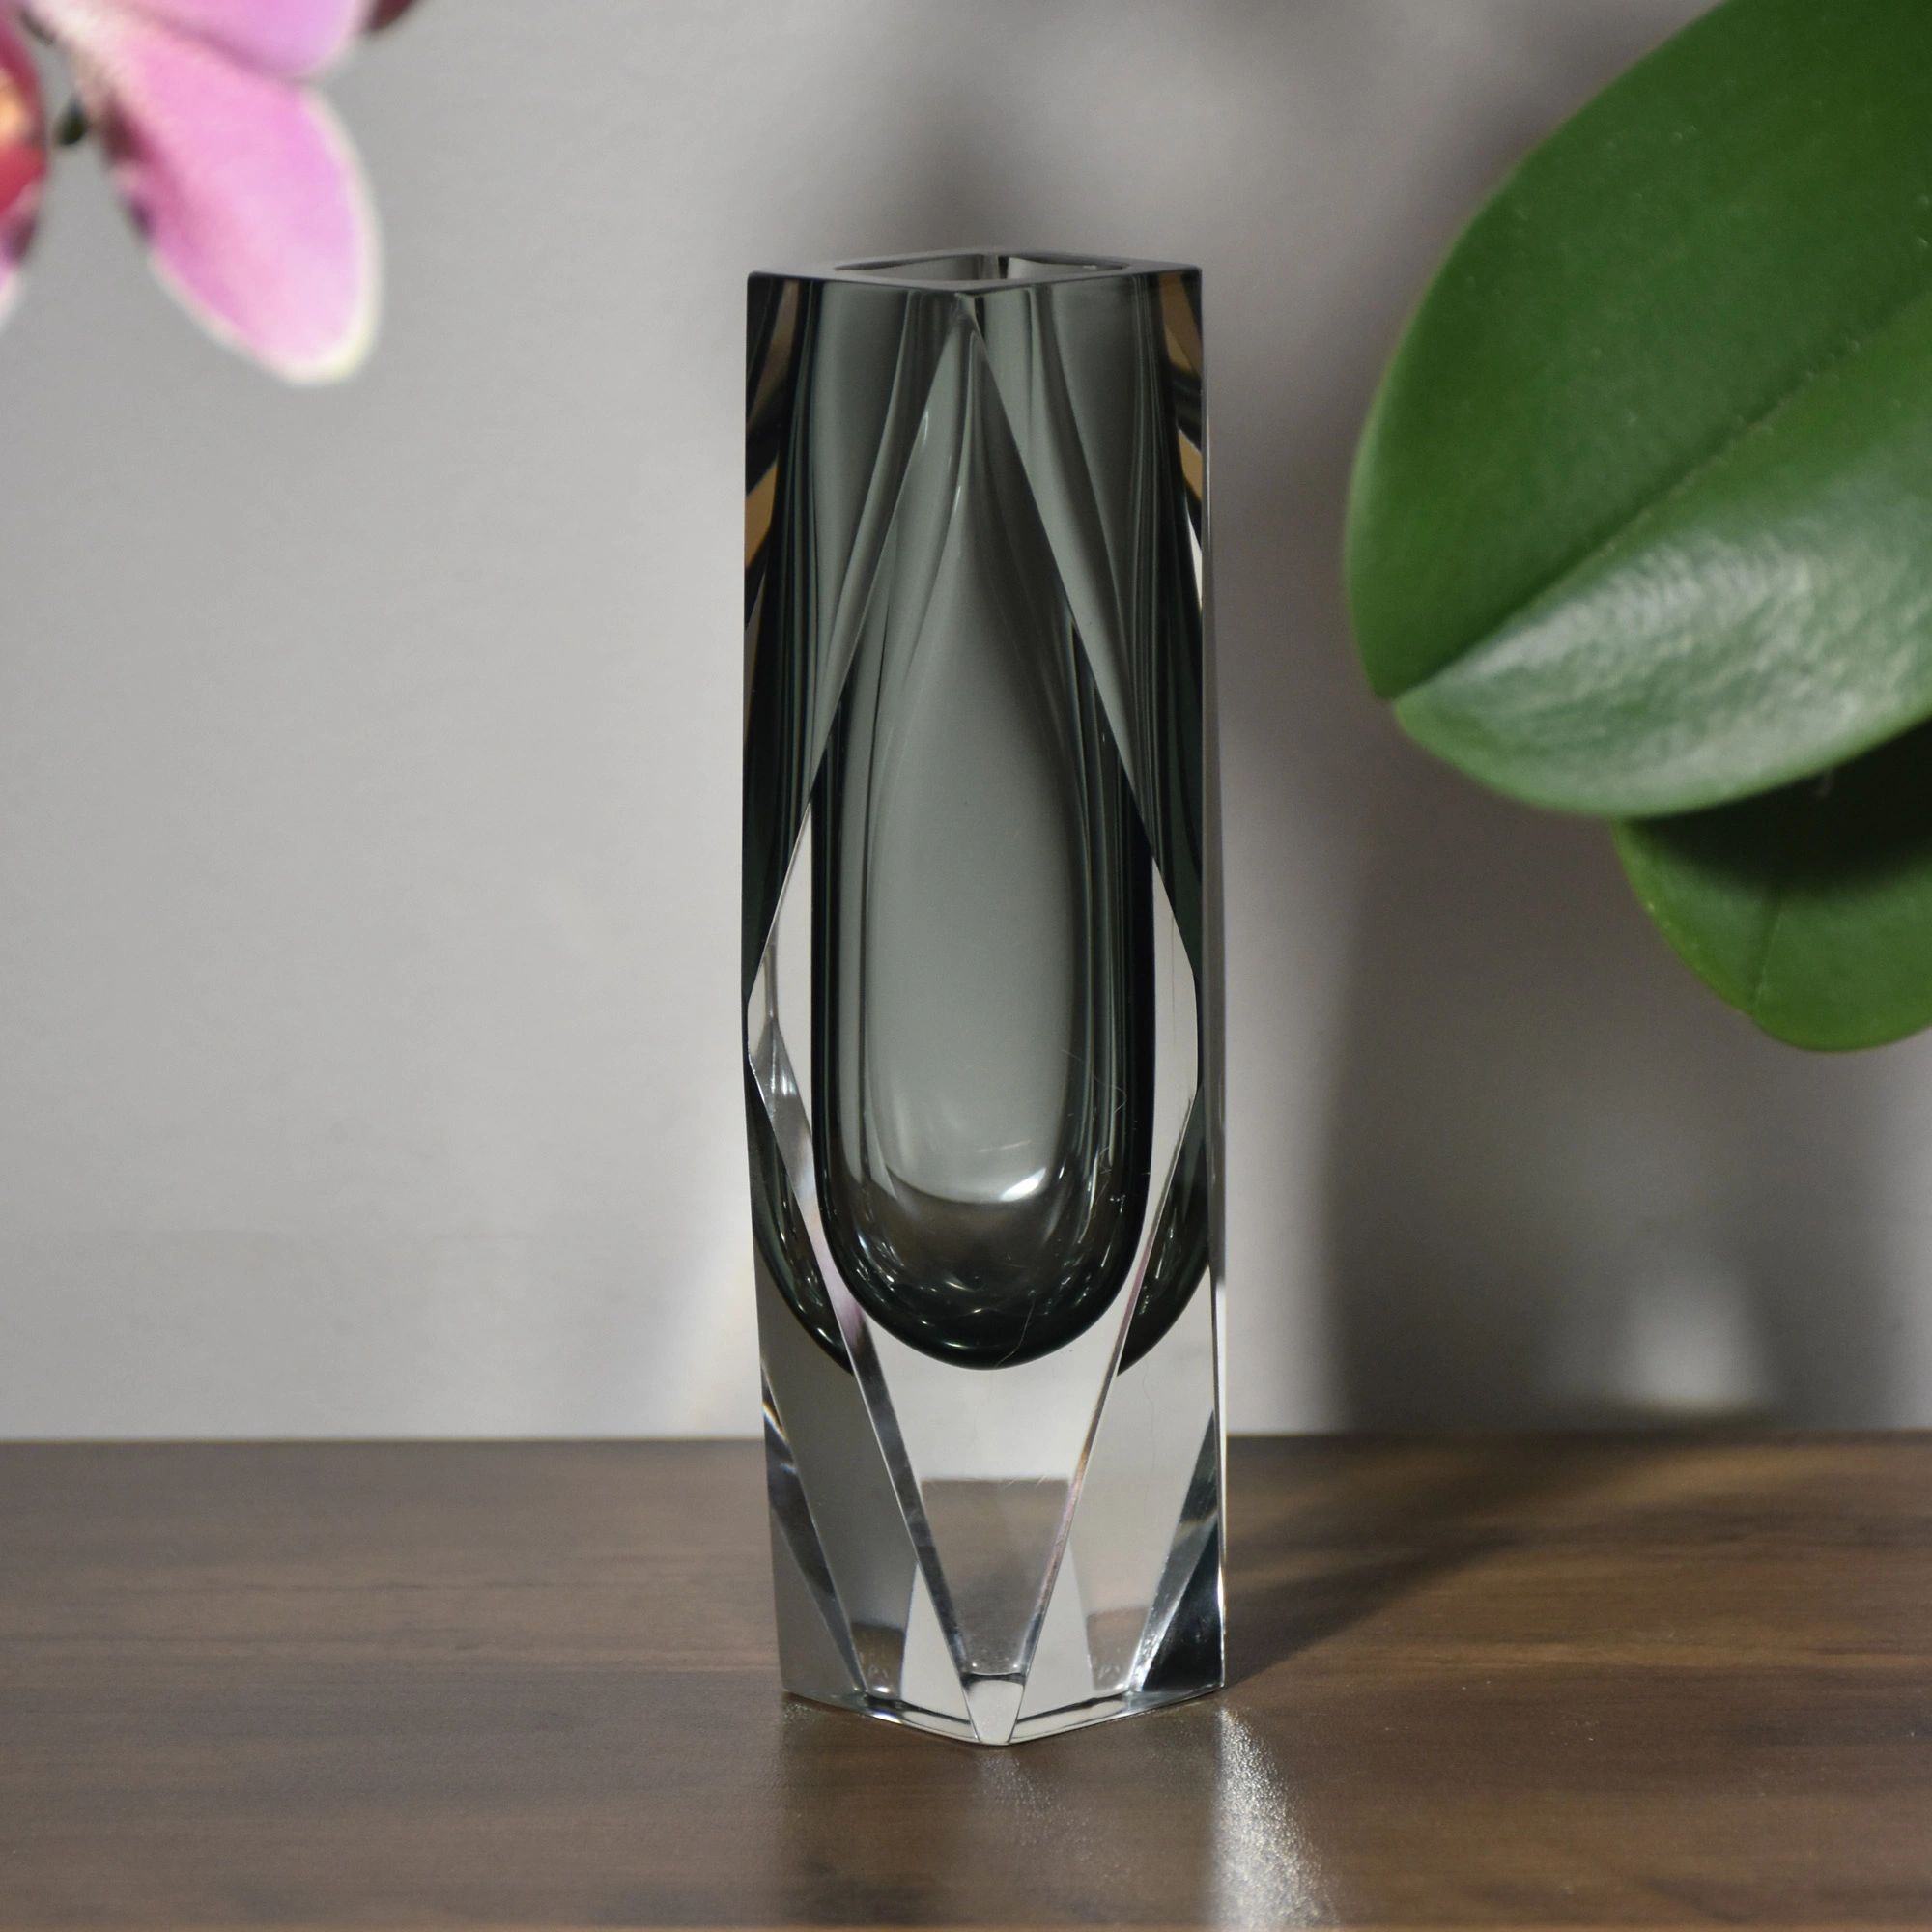 Murano Sommerso Faceted Art Glass Bud Vase, GORGEOUS Smoke Grey
NeworBetter.com